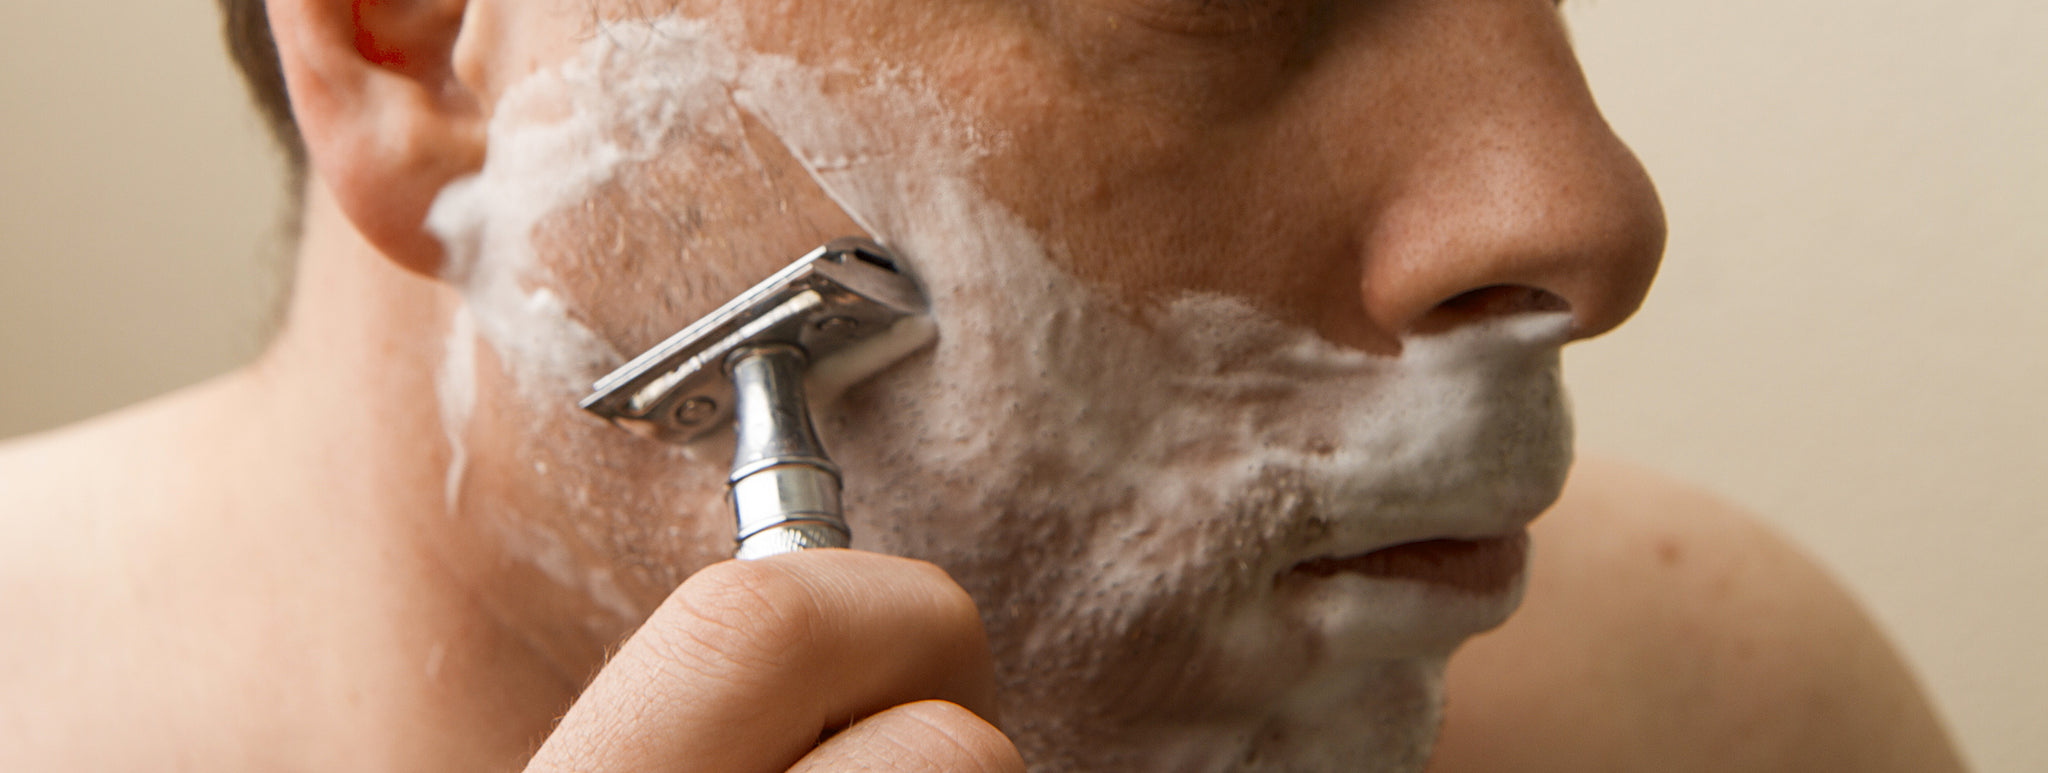 razor for shaving beard